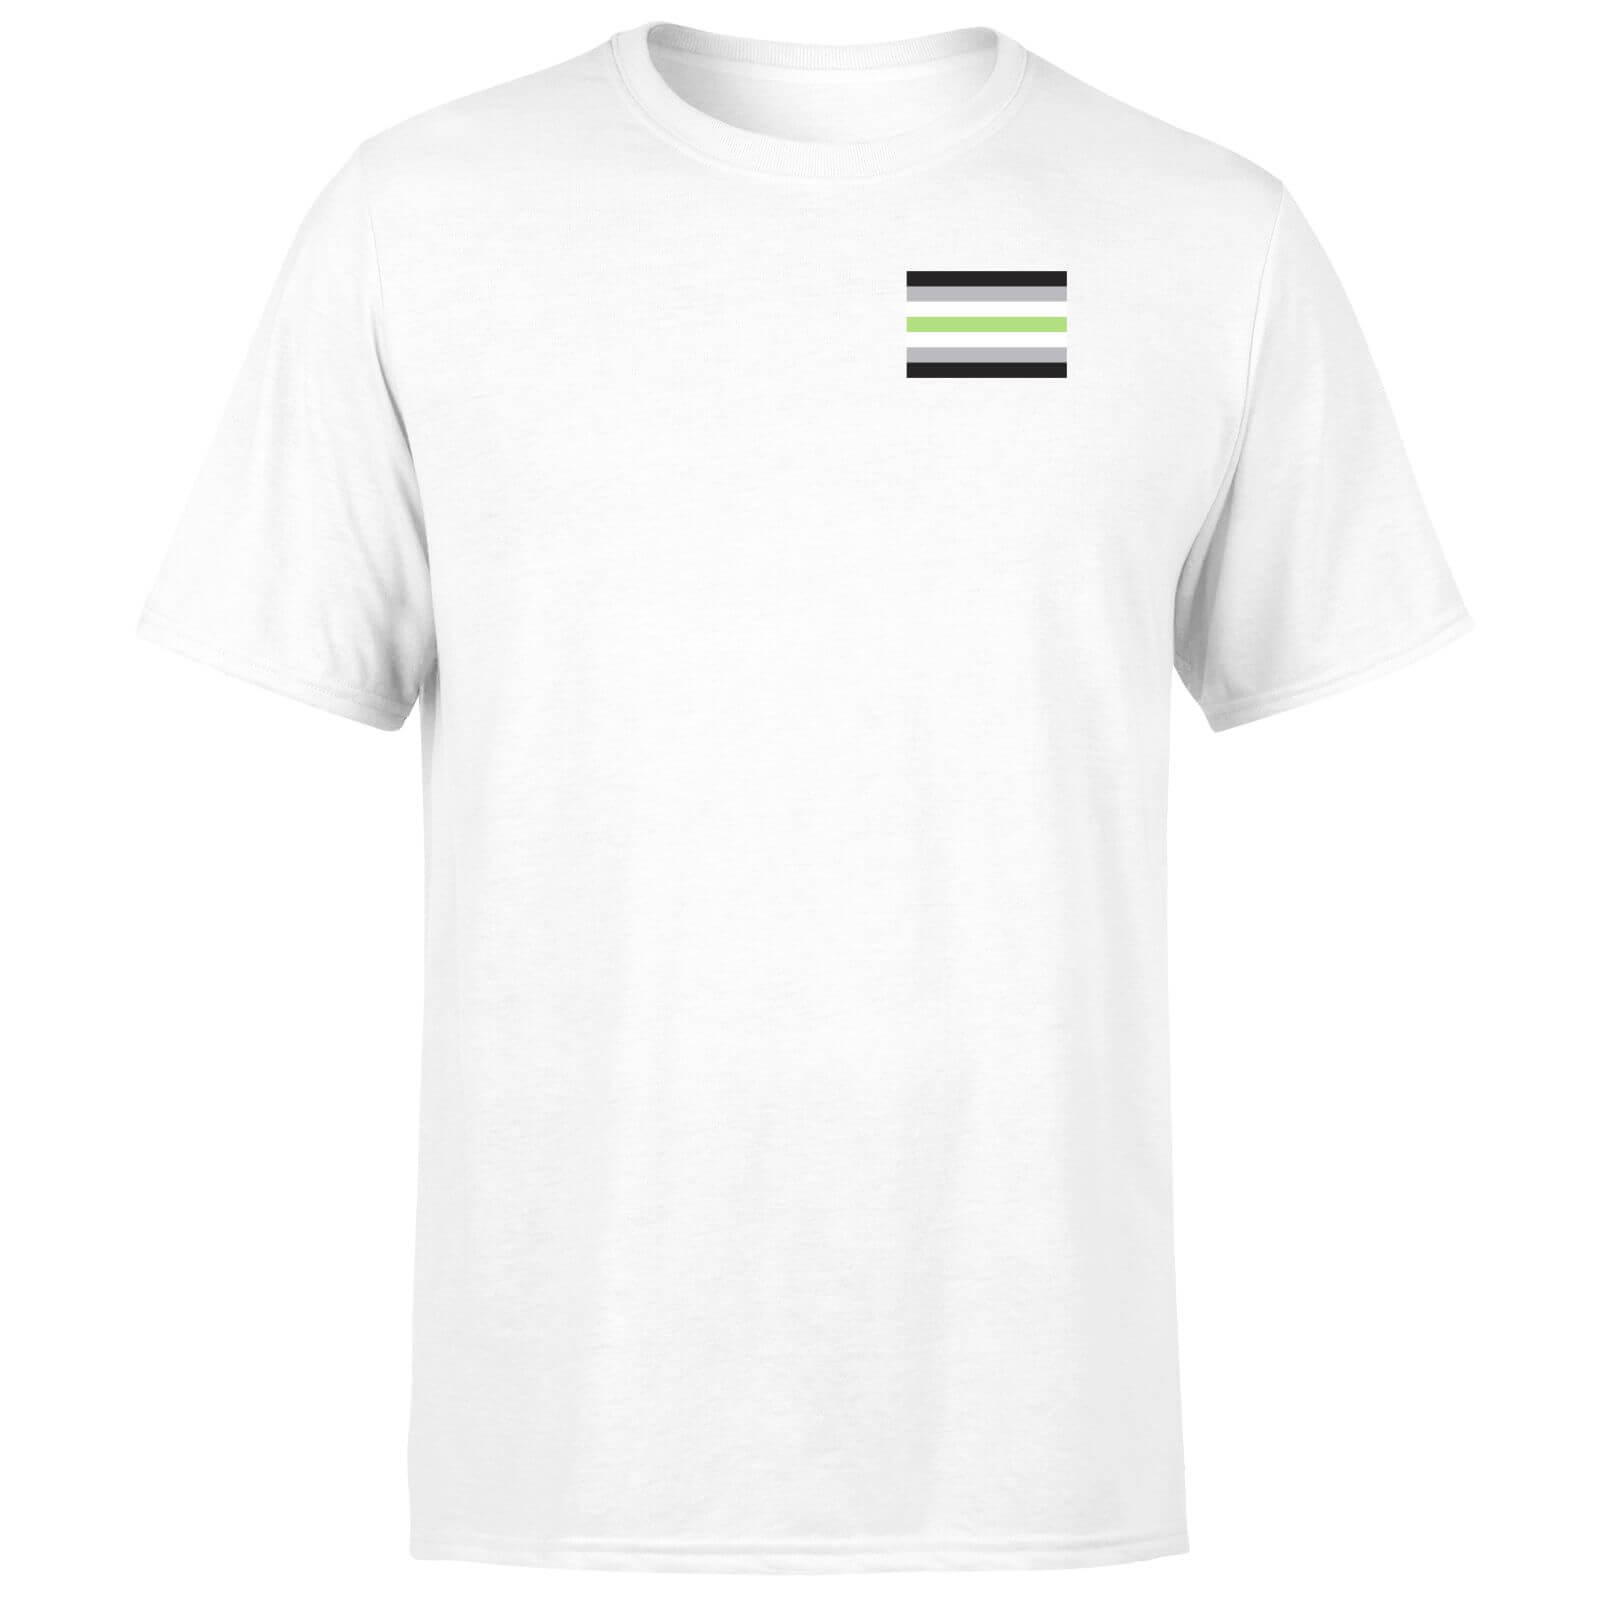 Agender Flag T-Shirt - White - XS - White